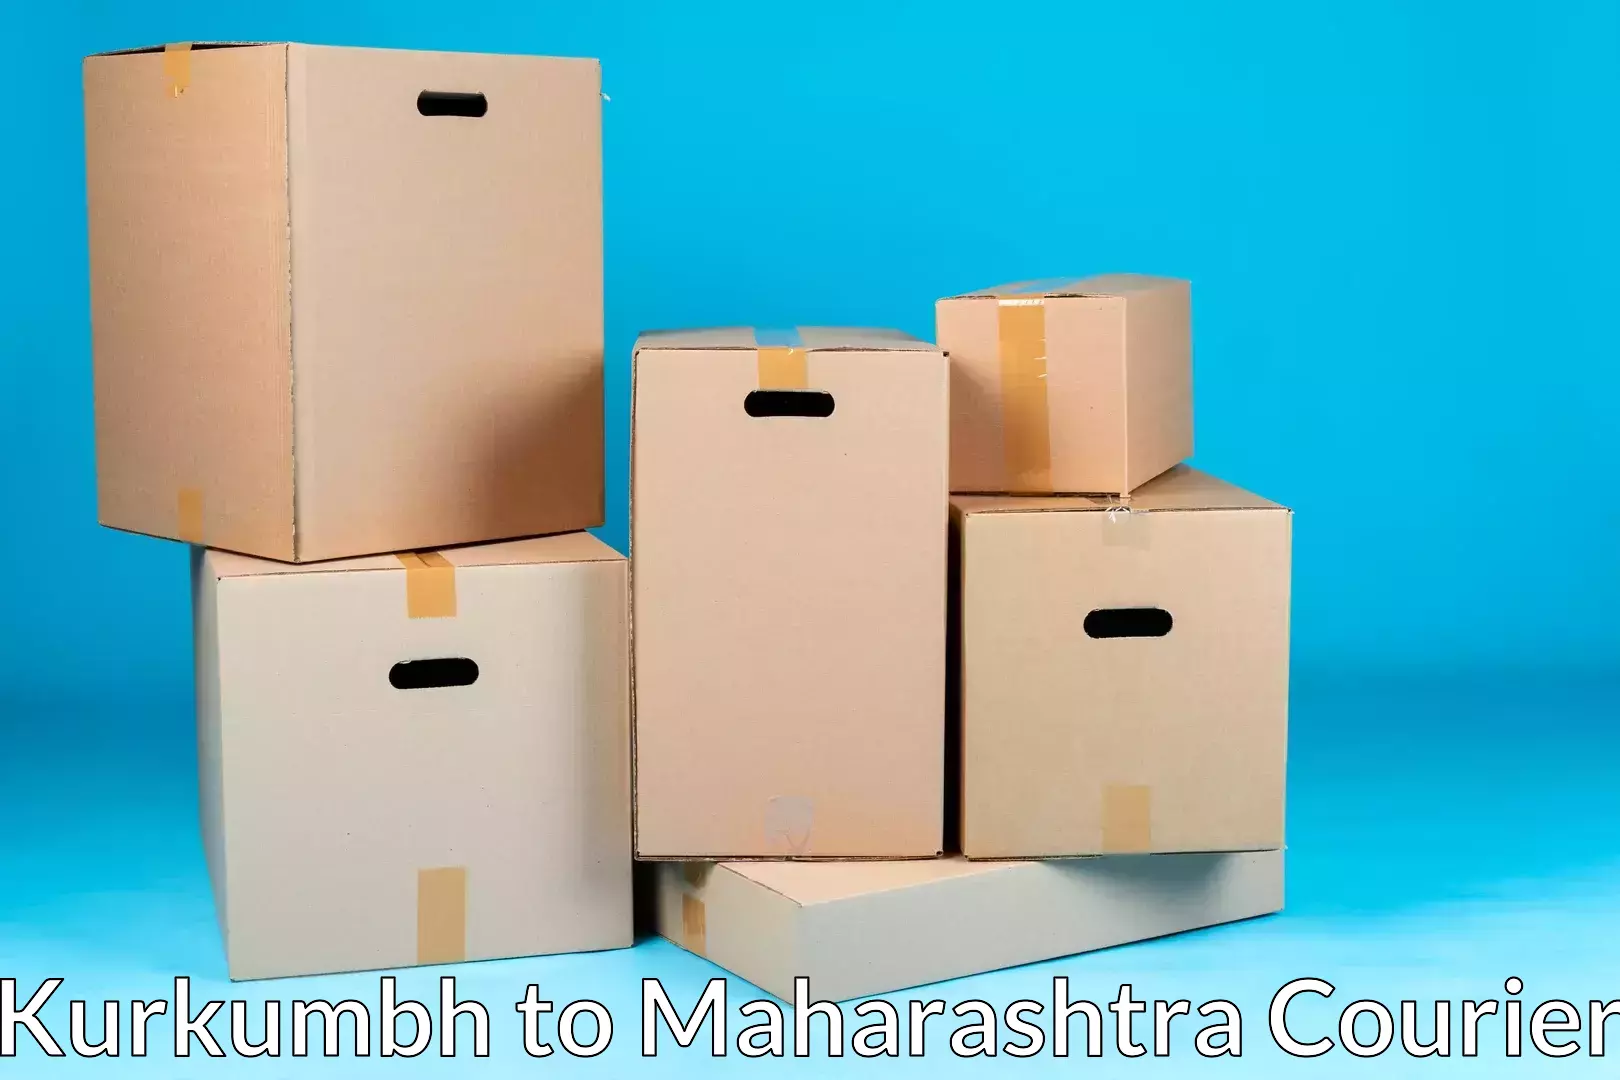 Nationwide furniture transport in Kurkumbh to Maharashtra